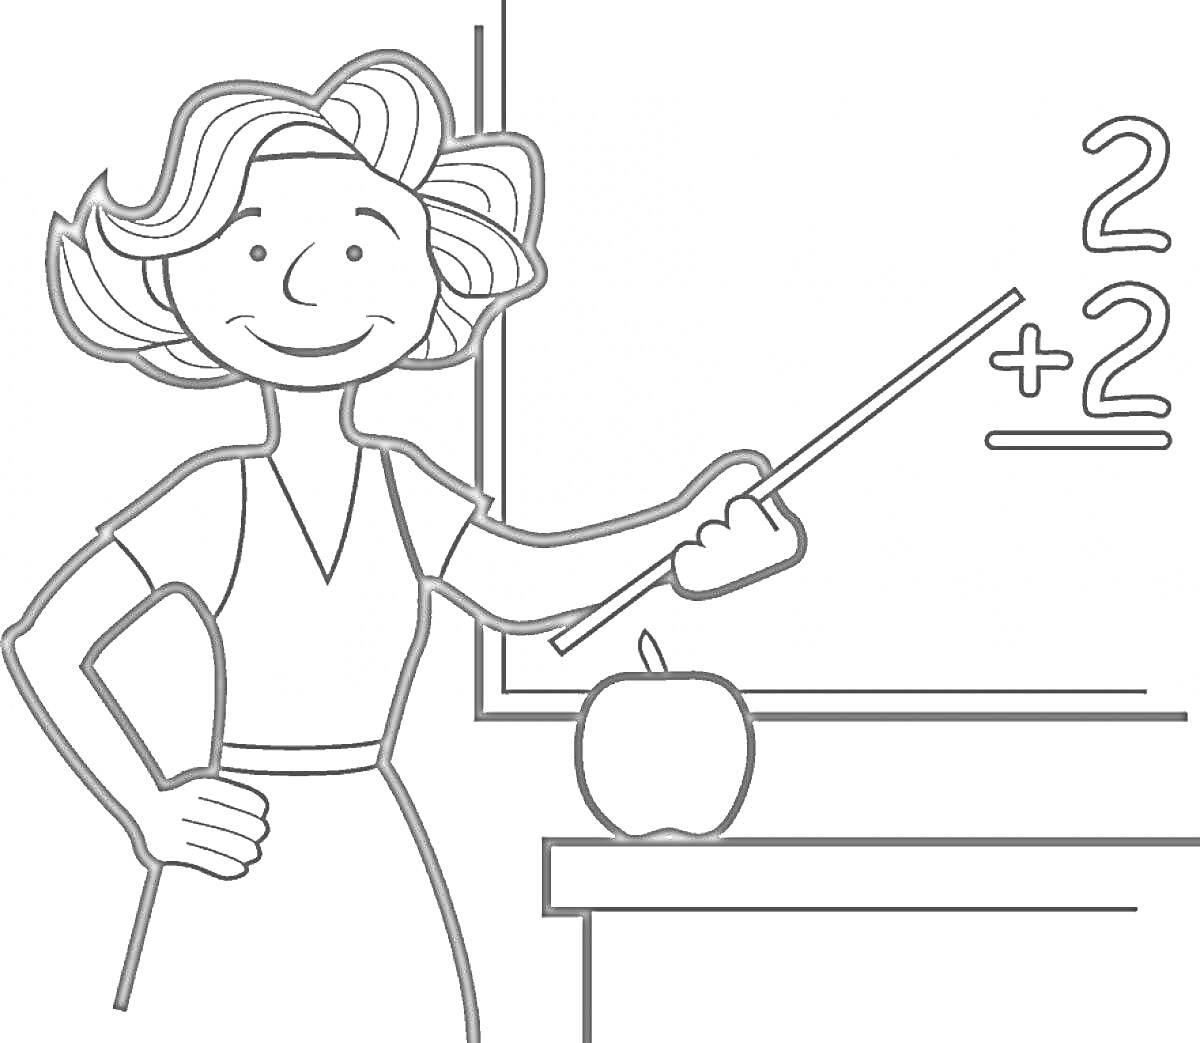 Раскраска Учитель у доски с указкой, яблоком и уравнением 2 + 2